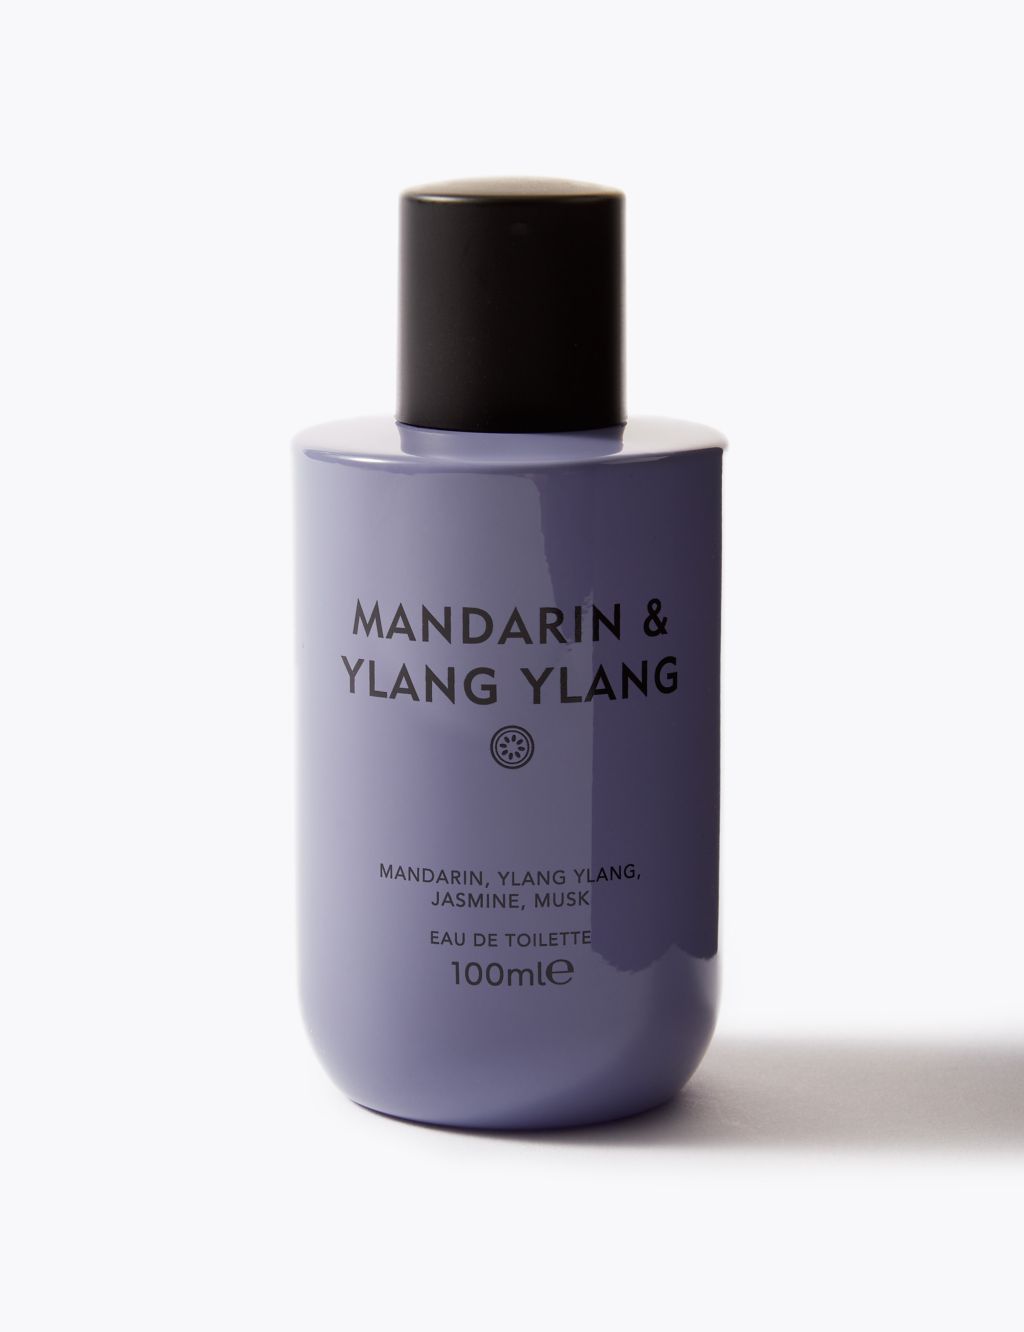 Mandarin & Ylang Ylang Eau de Toilette 100ml 4 of 6